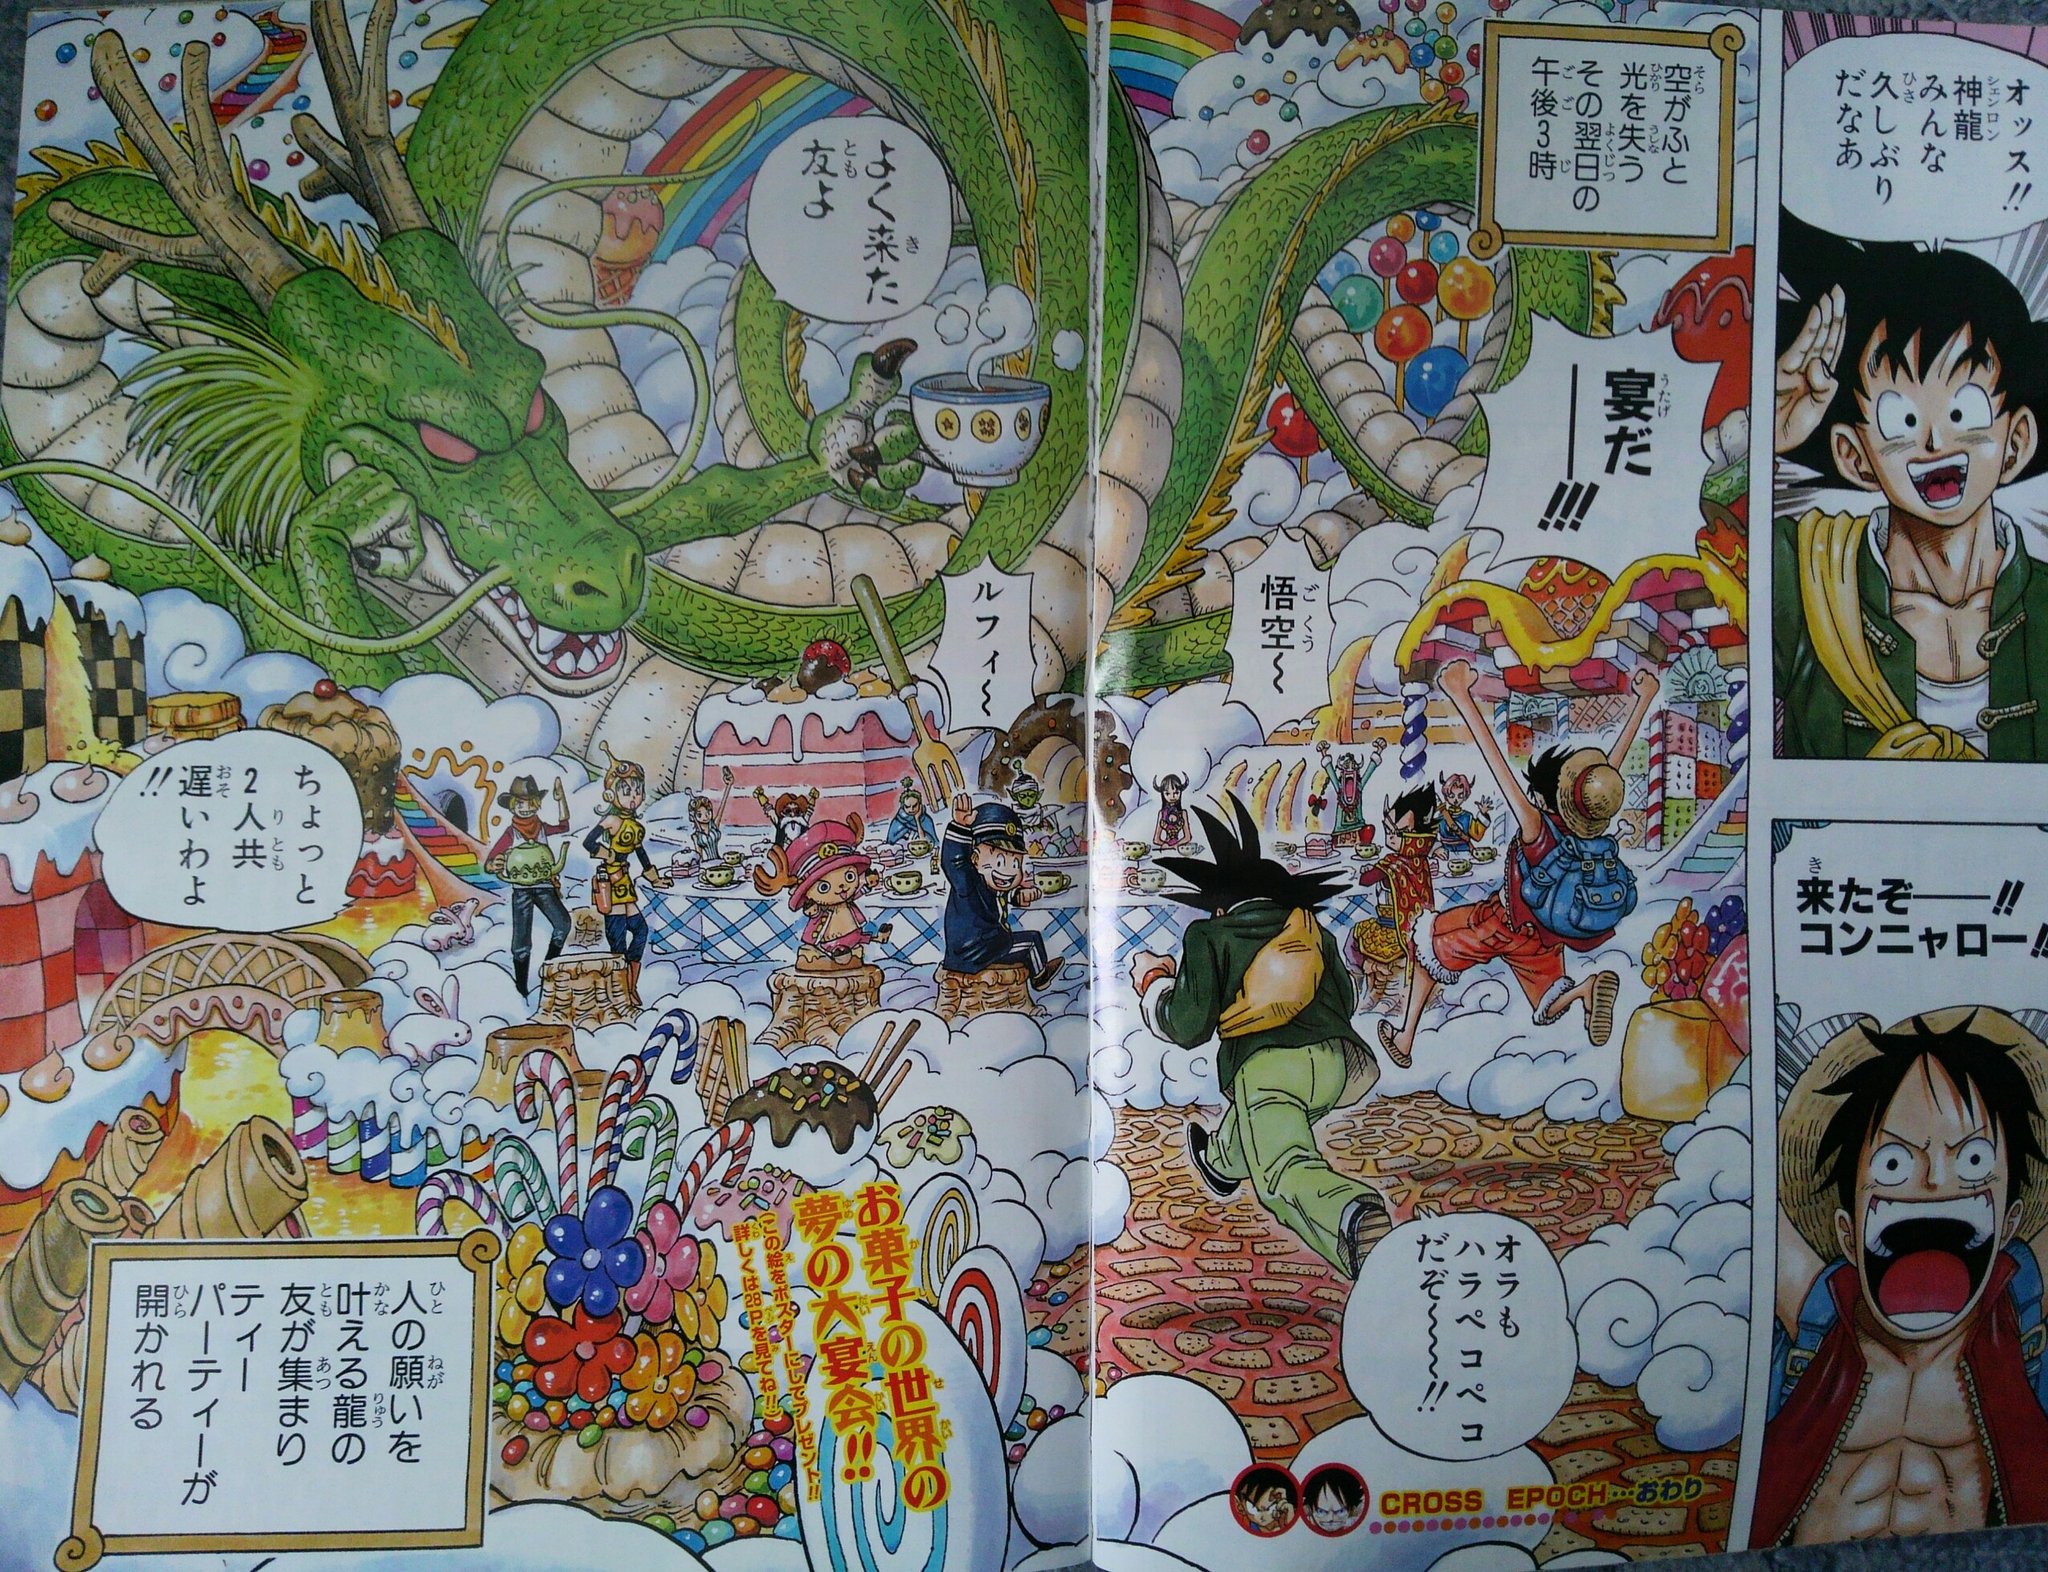 ふねひ Sur Twitter ワンピース One Piece 10周年記念 ドラコンボールとのコラボ漫画のジャンプを発見 クロスエポック 鳥山明 尾田栄一郎 T Co Q8cid2syzw